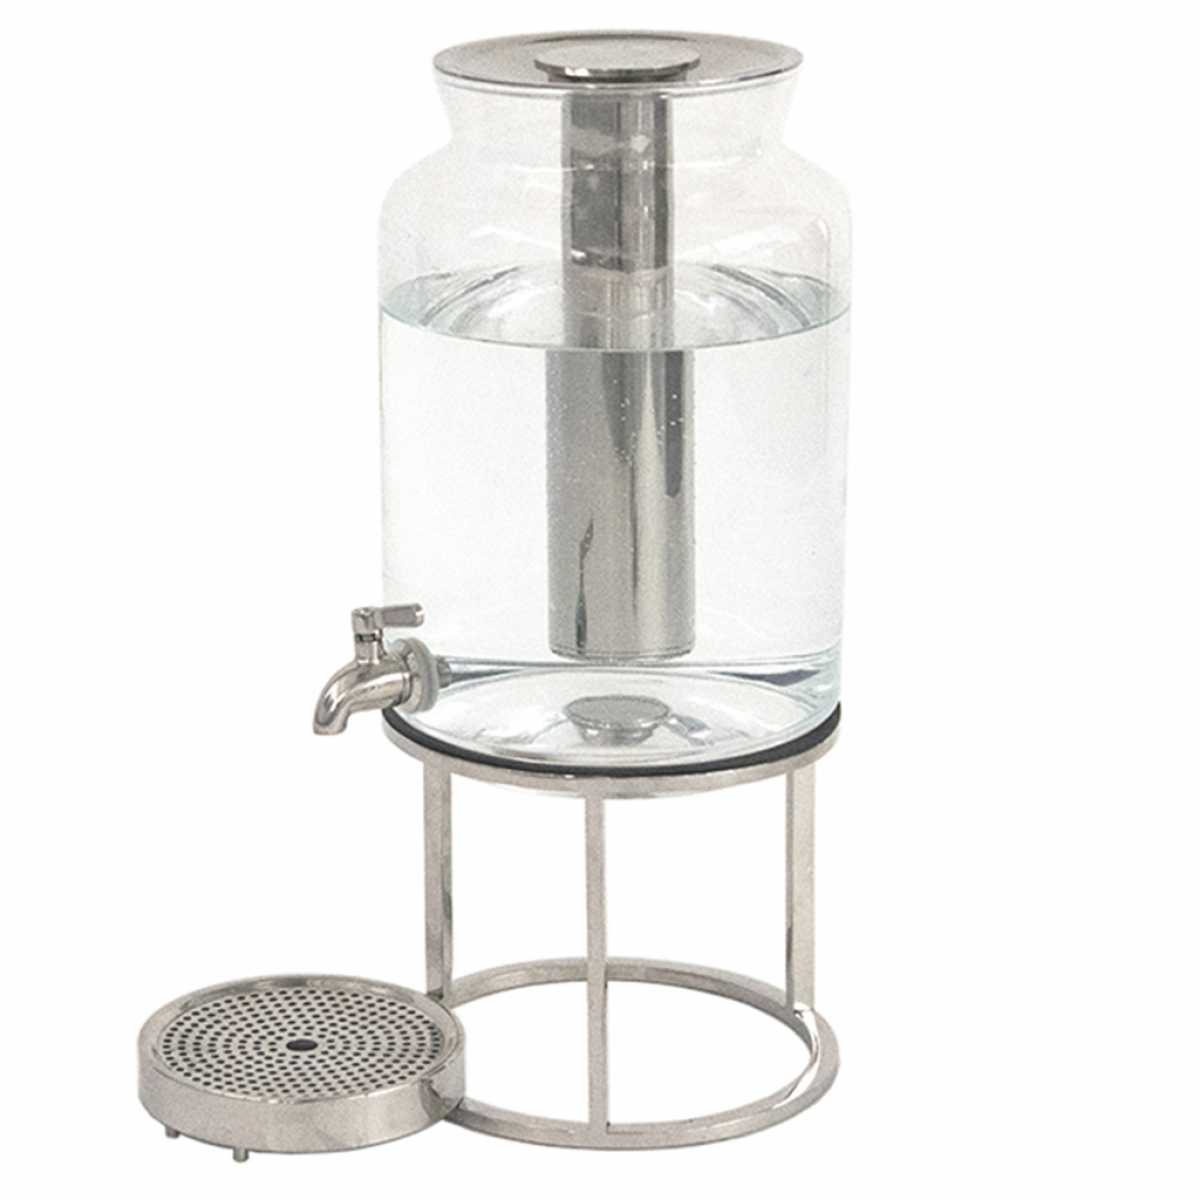 https://www.guestinhouse.com/images/collections/auto/craster-tilt-juice-dispenser-set-glass-jar-with-pcm-cooling-tilt-riser-sold-separately_1.jpg